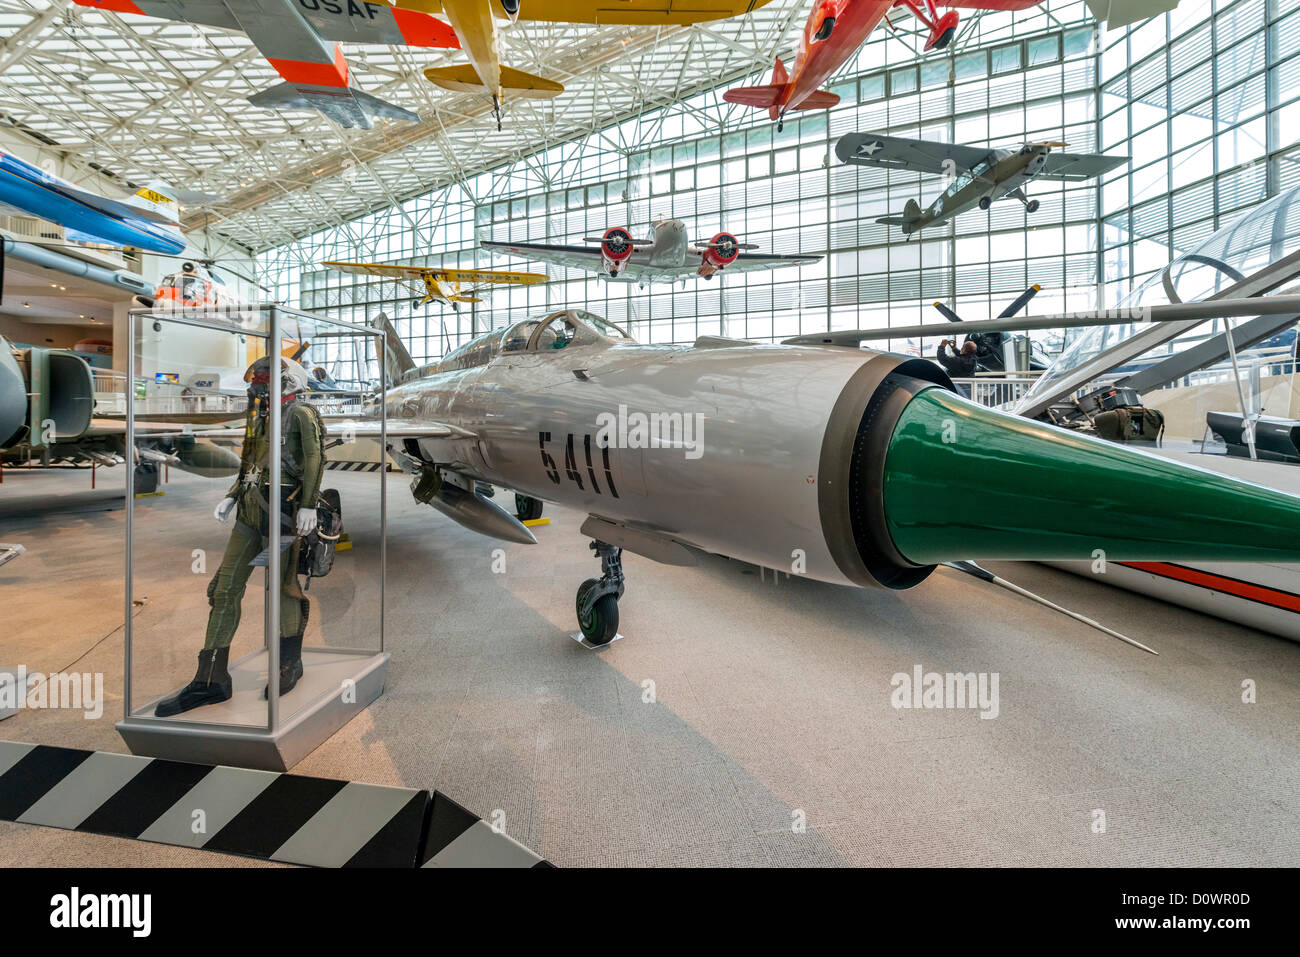 Ein Kampfflugzeug der 1967 Mikojan-Gurewitsch MiG-21 PFM, die große Galerie, Museum of Flight, Seattle, Washington, USA Stockfoto